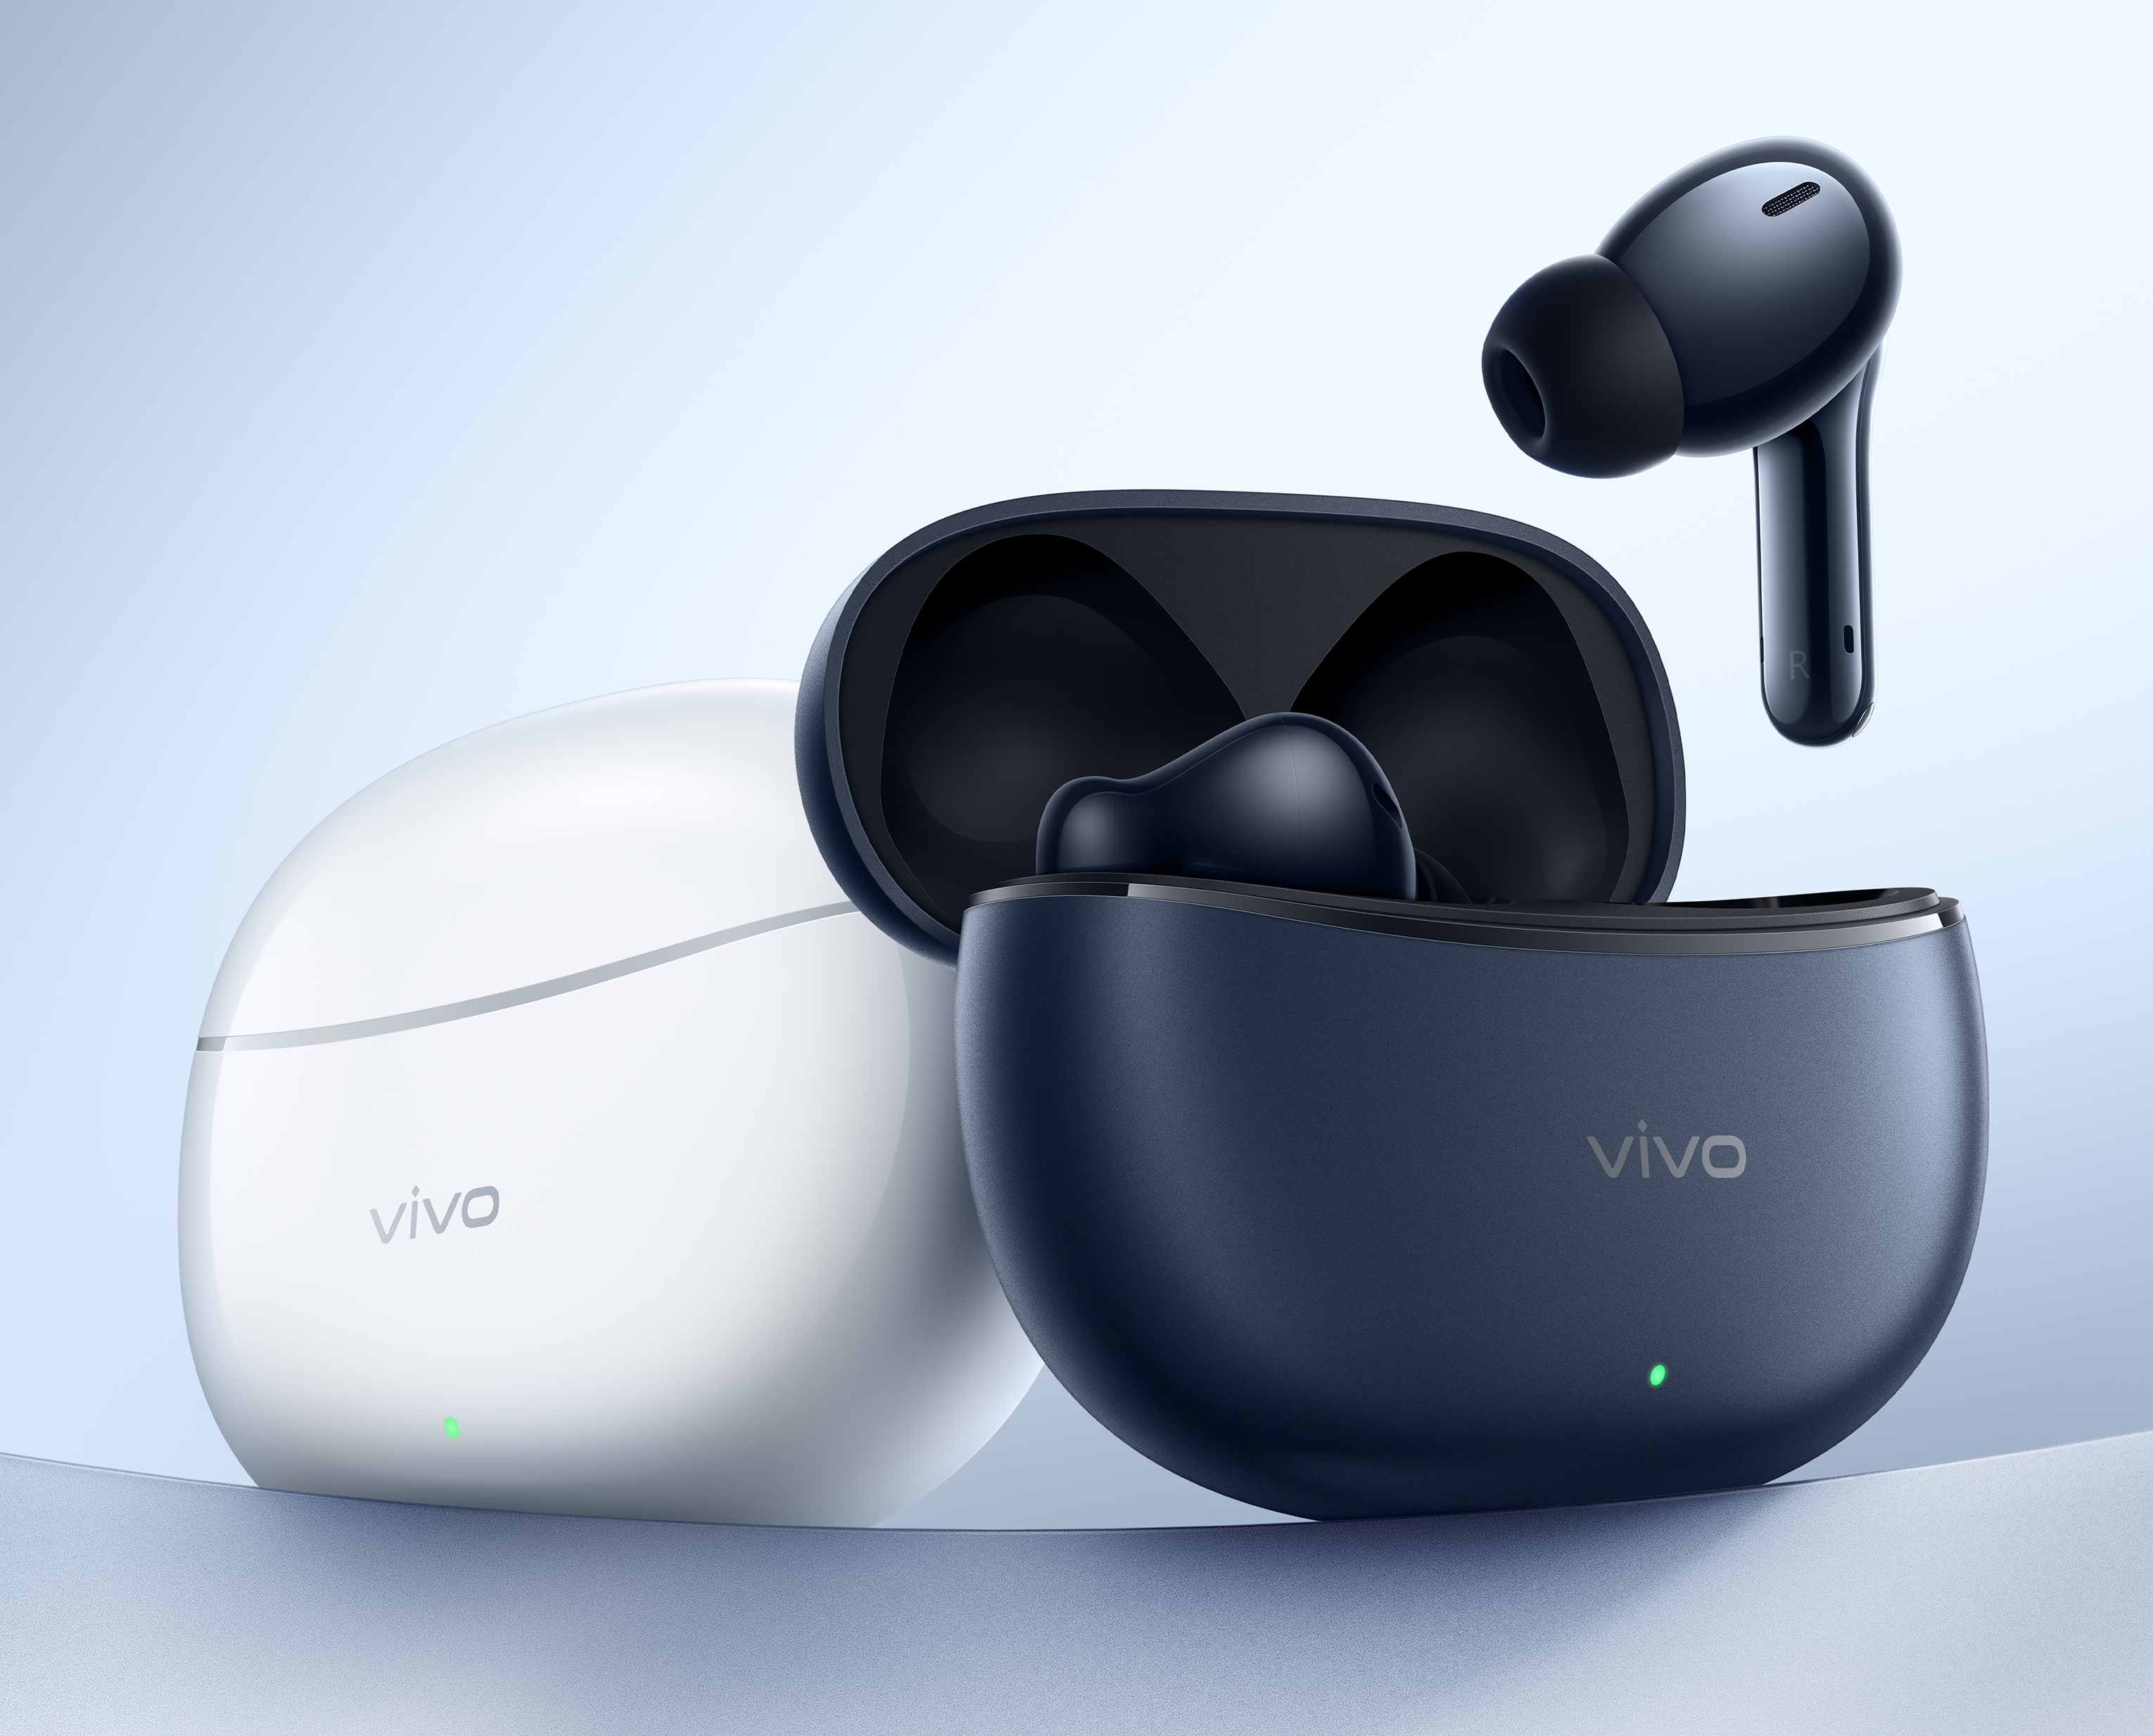 Ikke kun vivo S18-smartphones: vivo afslører også nye TWS-hovedtelefoner den 14. december